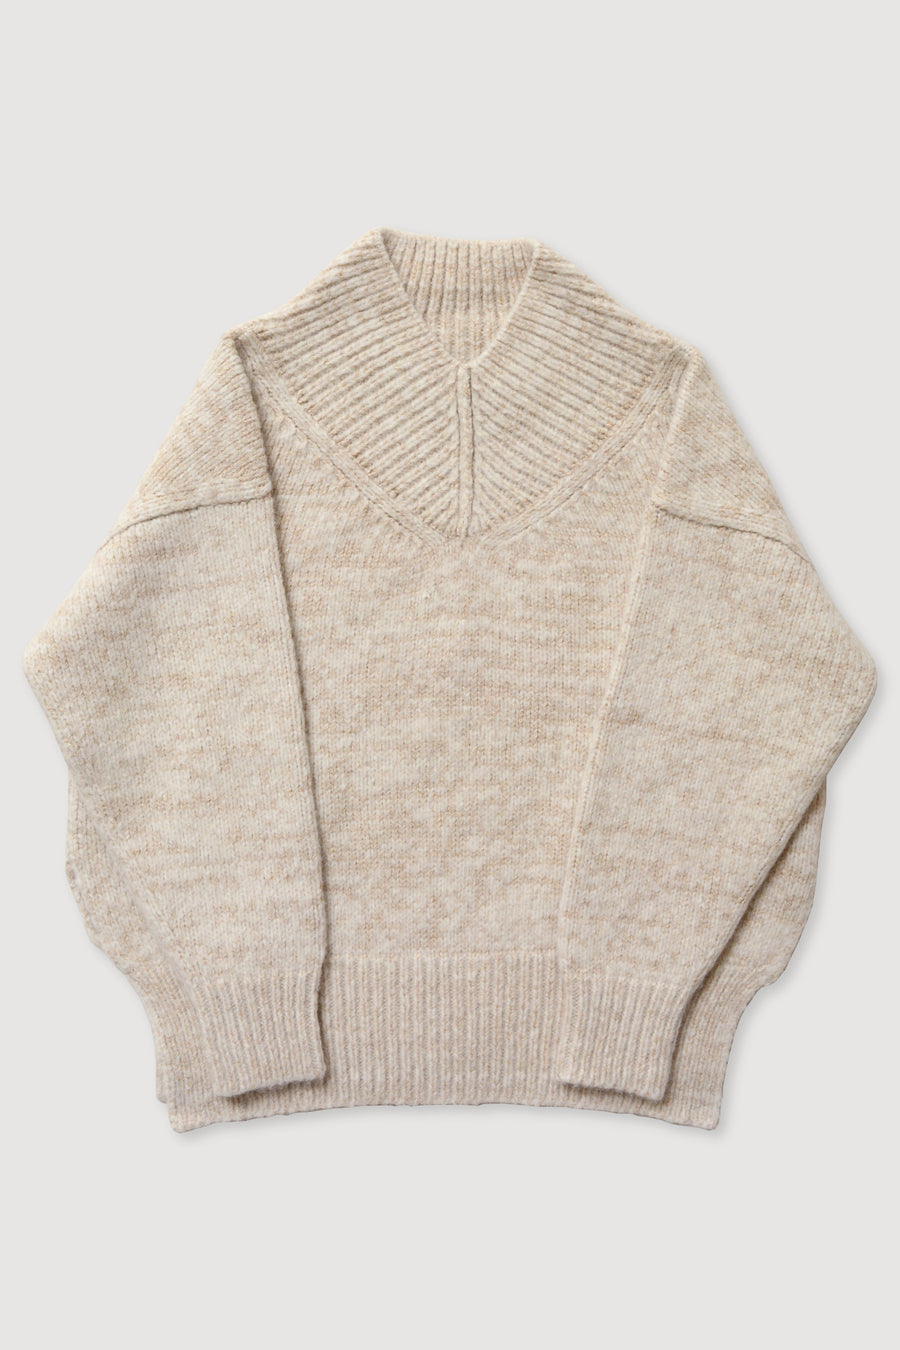 Cream Coco Sweater